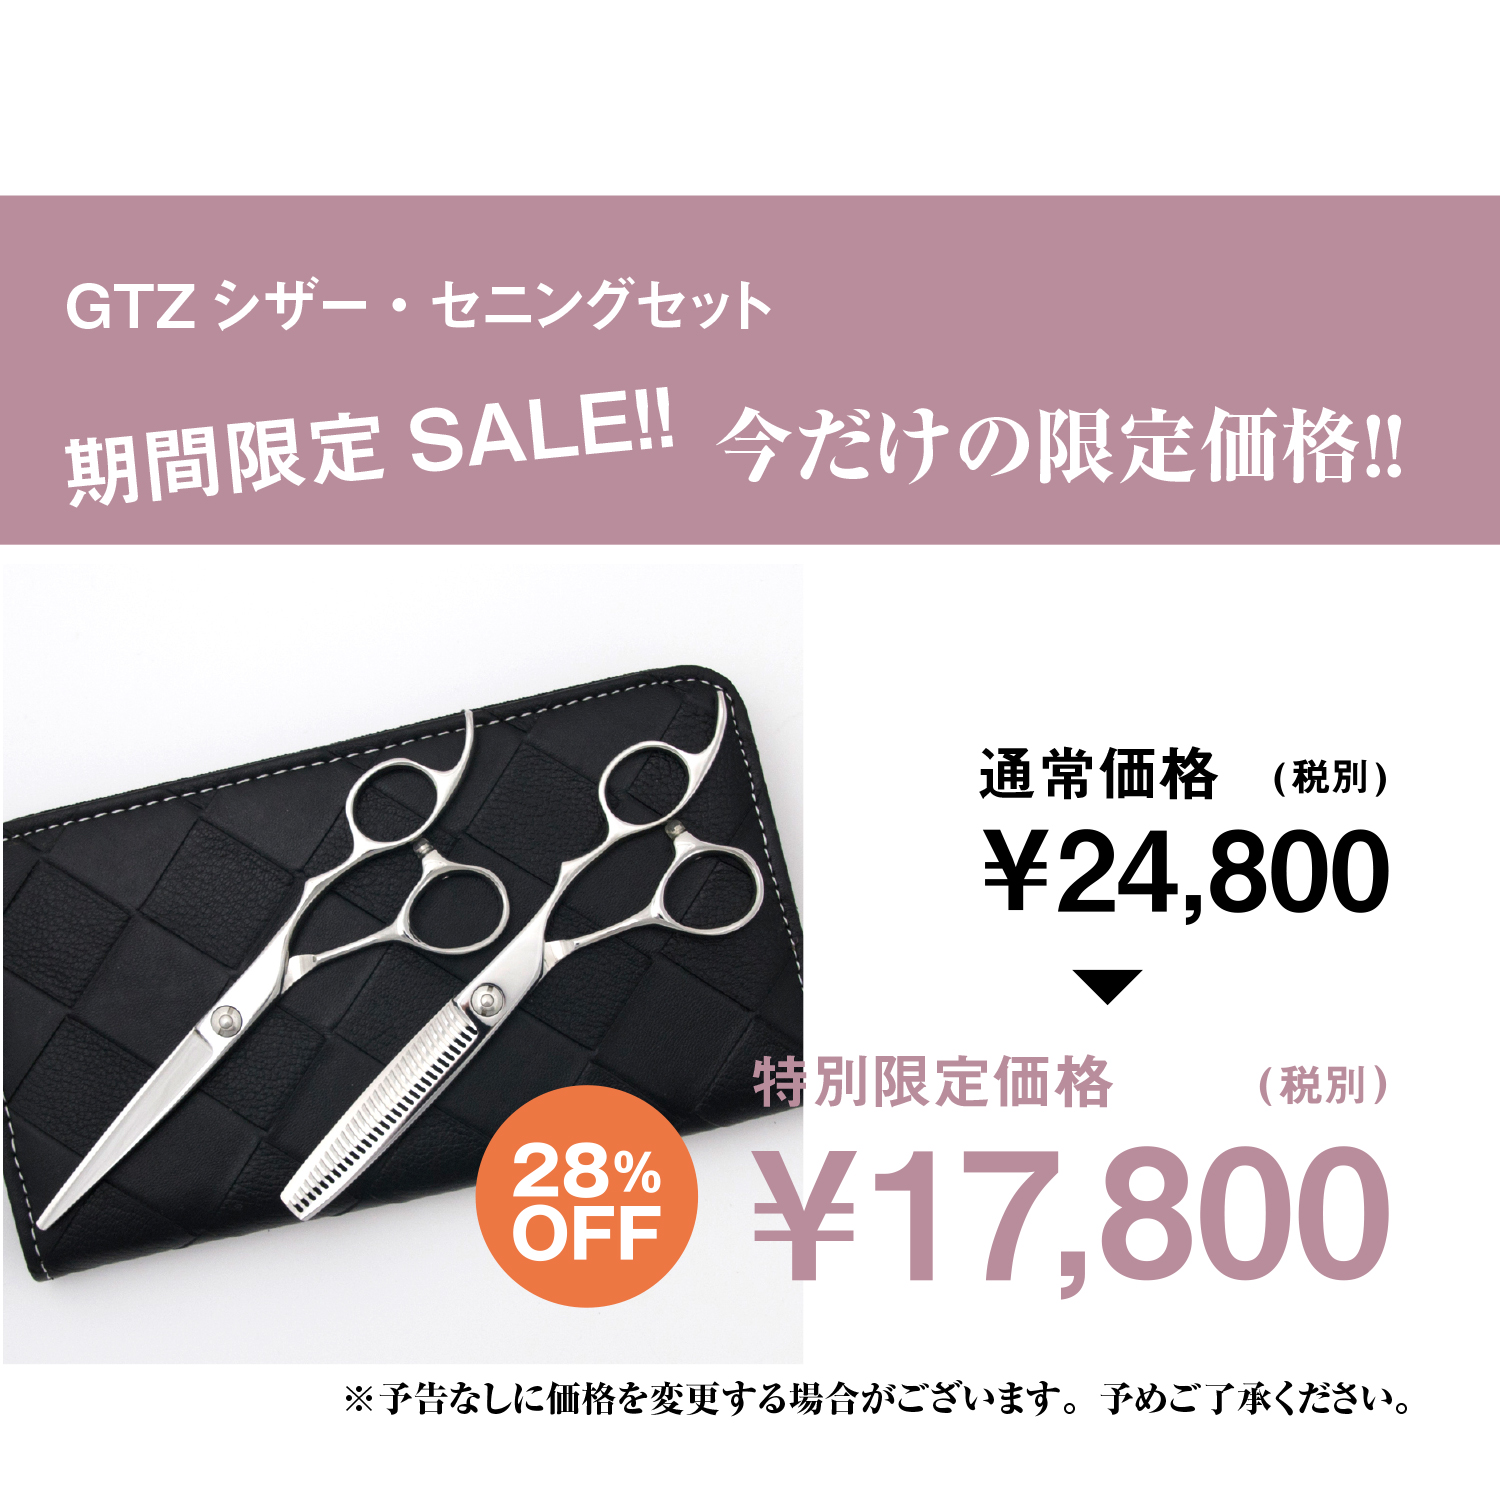 【PF】DEEDS 日本の鋏専門メーカー GTZ シザー（6.0インチ）セニング